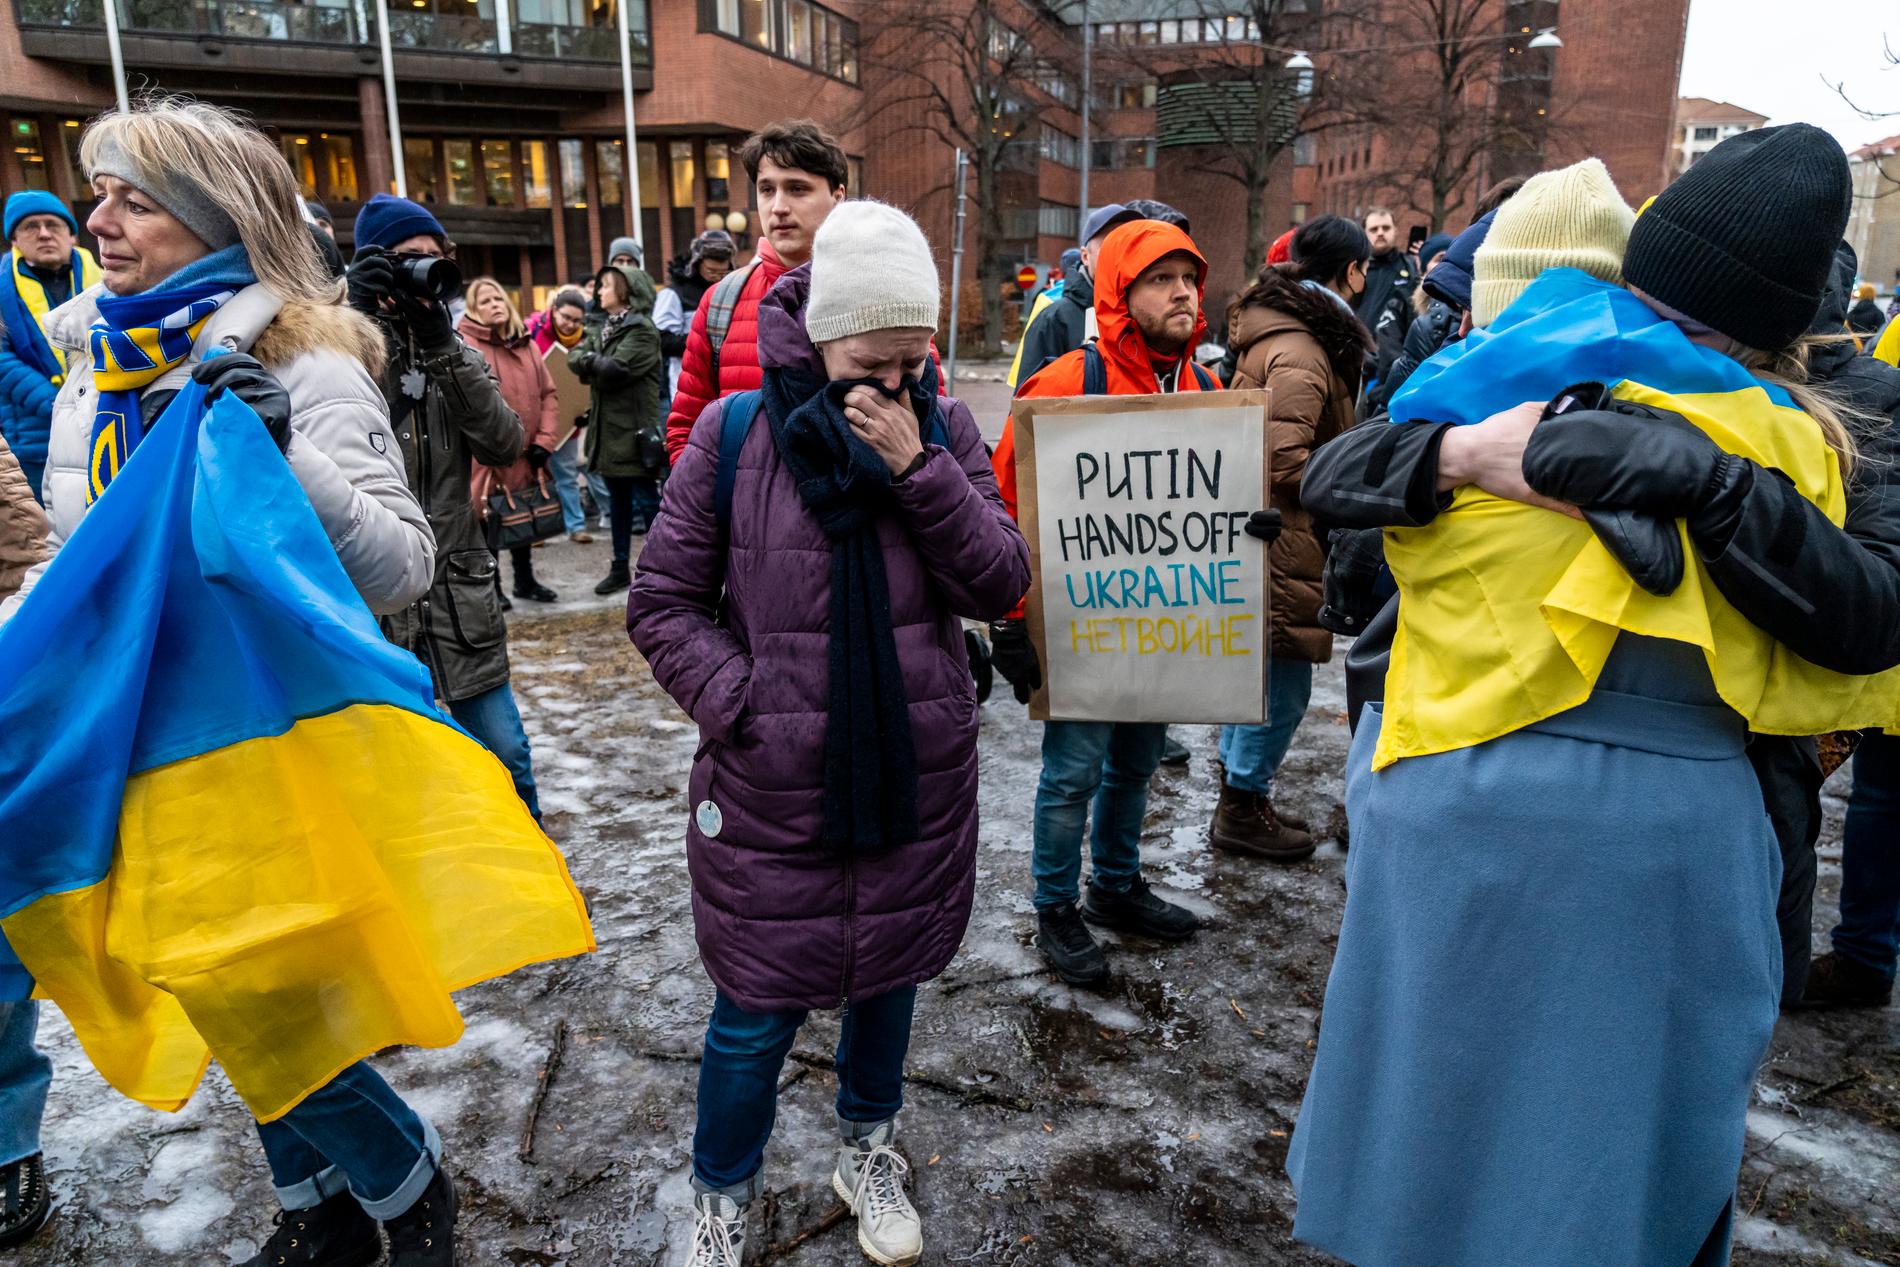 Hårda slagord ersattes av tårar när en kvinnlig demonstrant brast ut i den ukrainska nationalsången, och folkmassan stämde in.